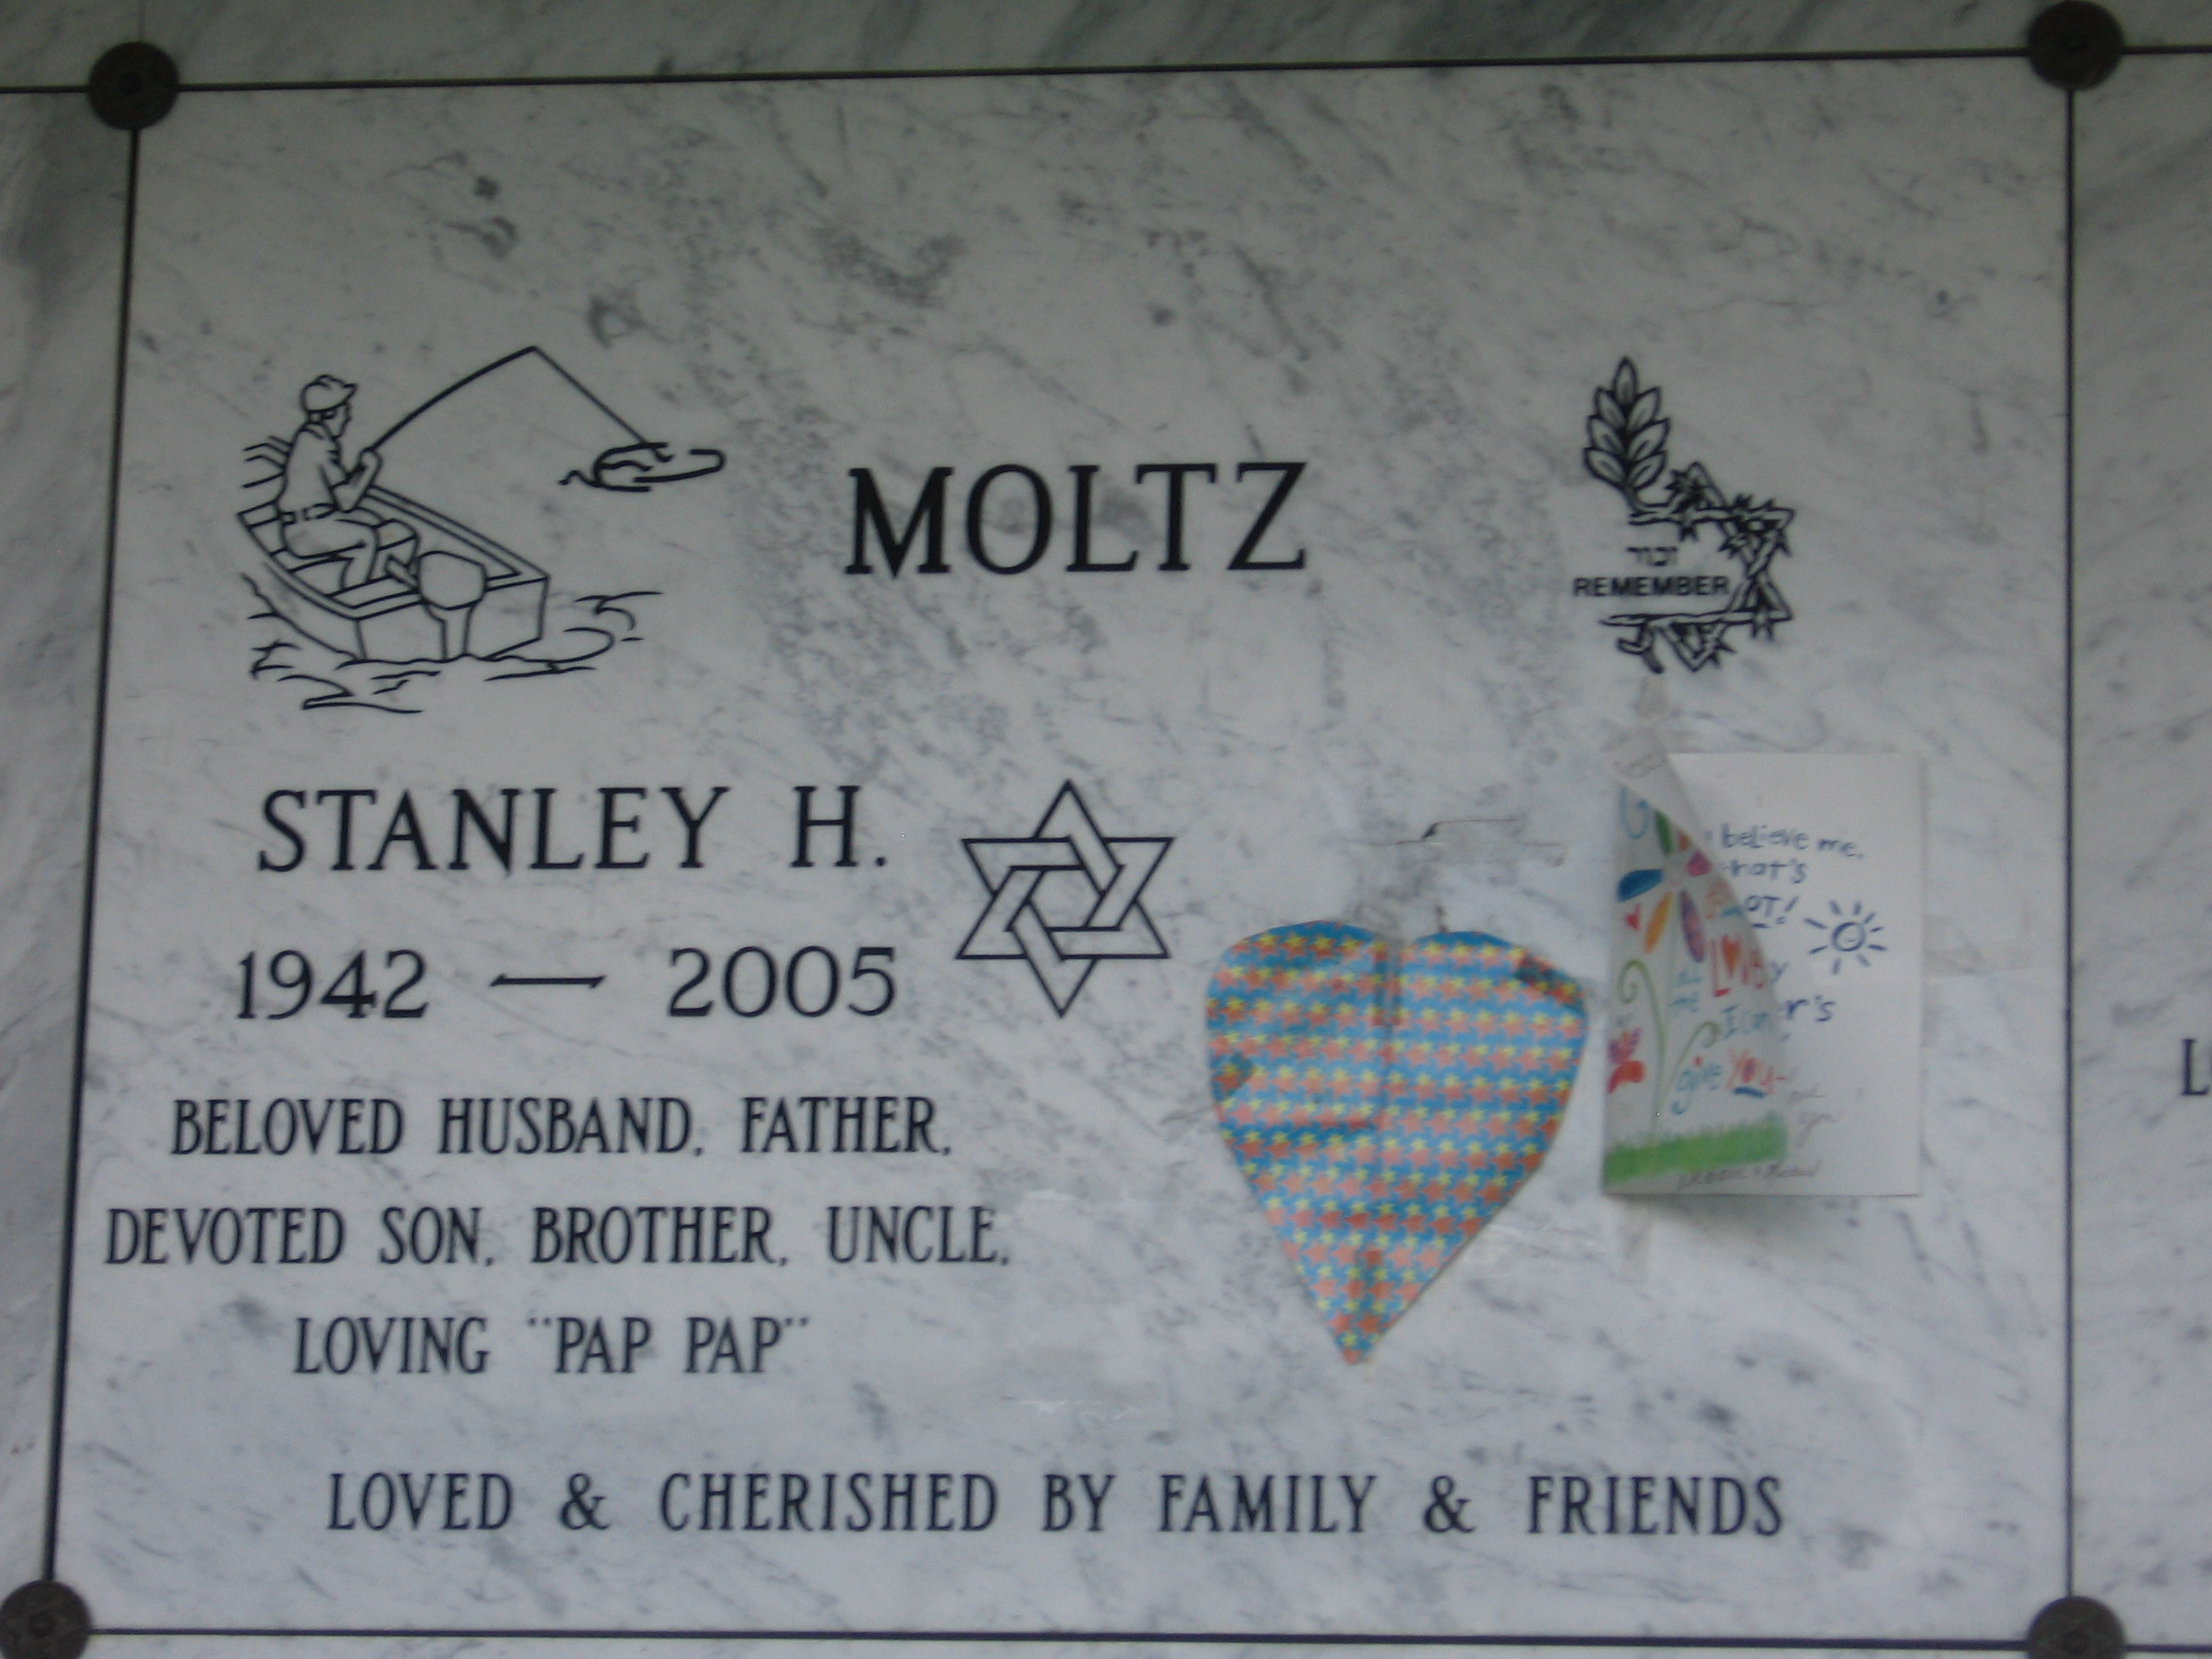 Stanley H Moltz